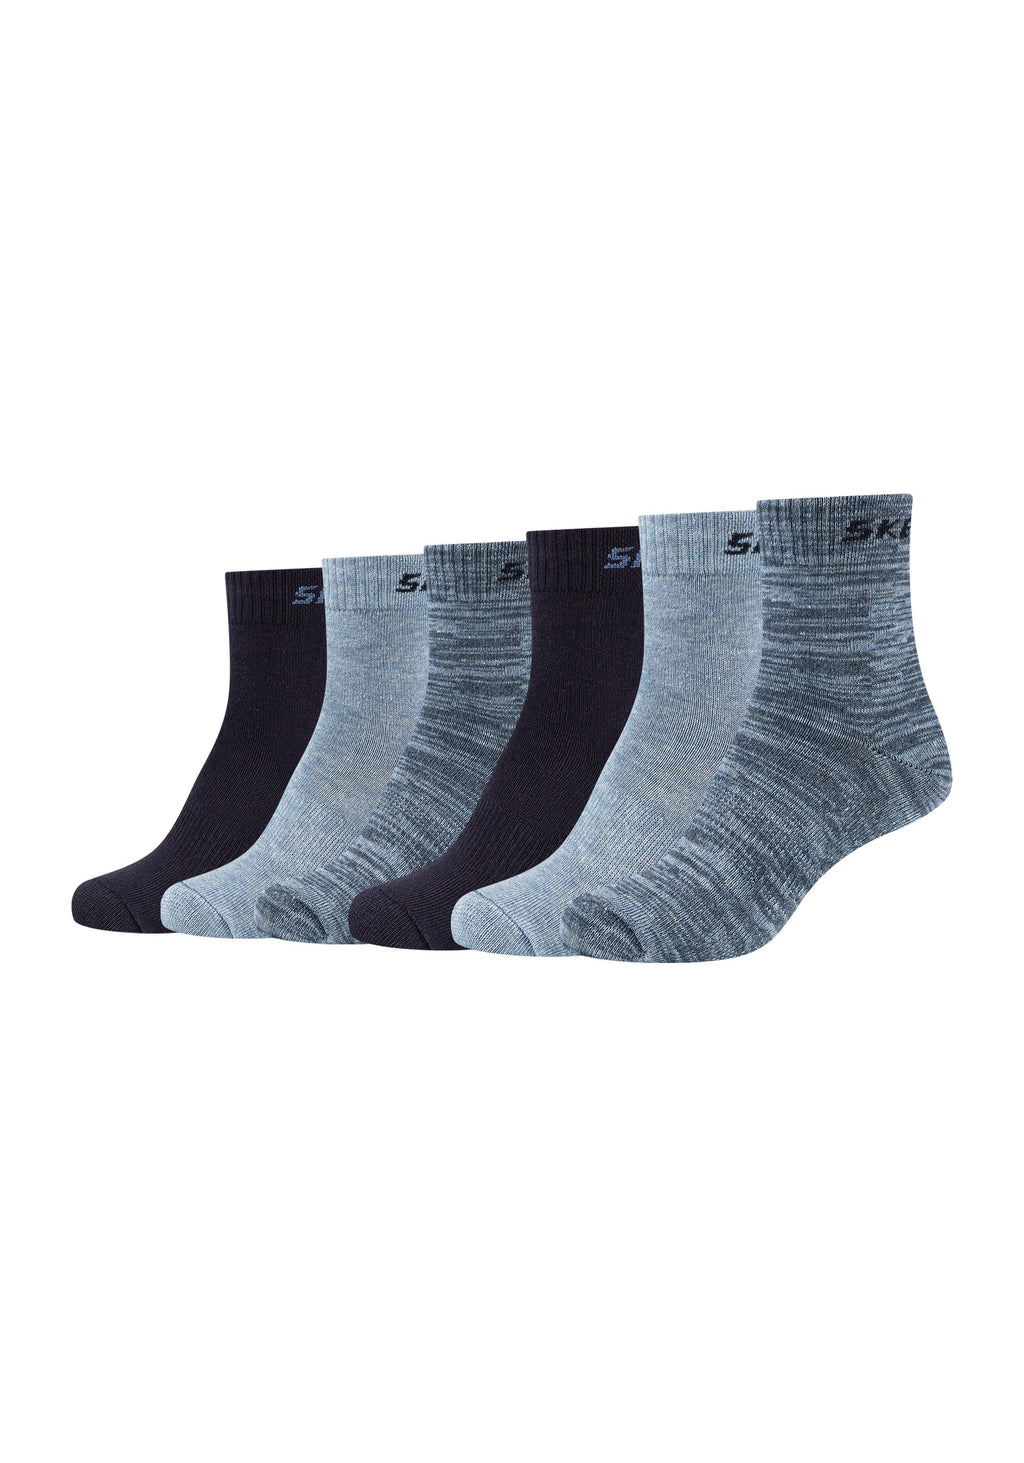 Mesh Ventilation Kinder ONSKINERY Socken Pack 6er –